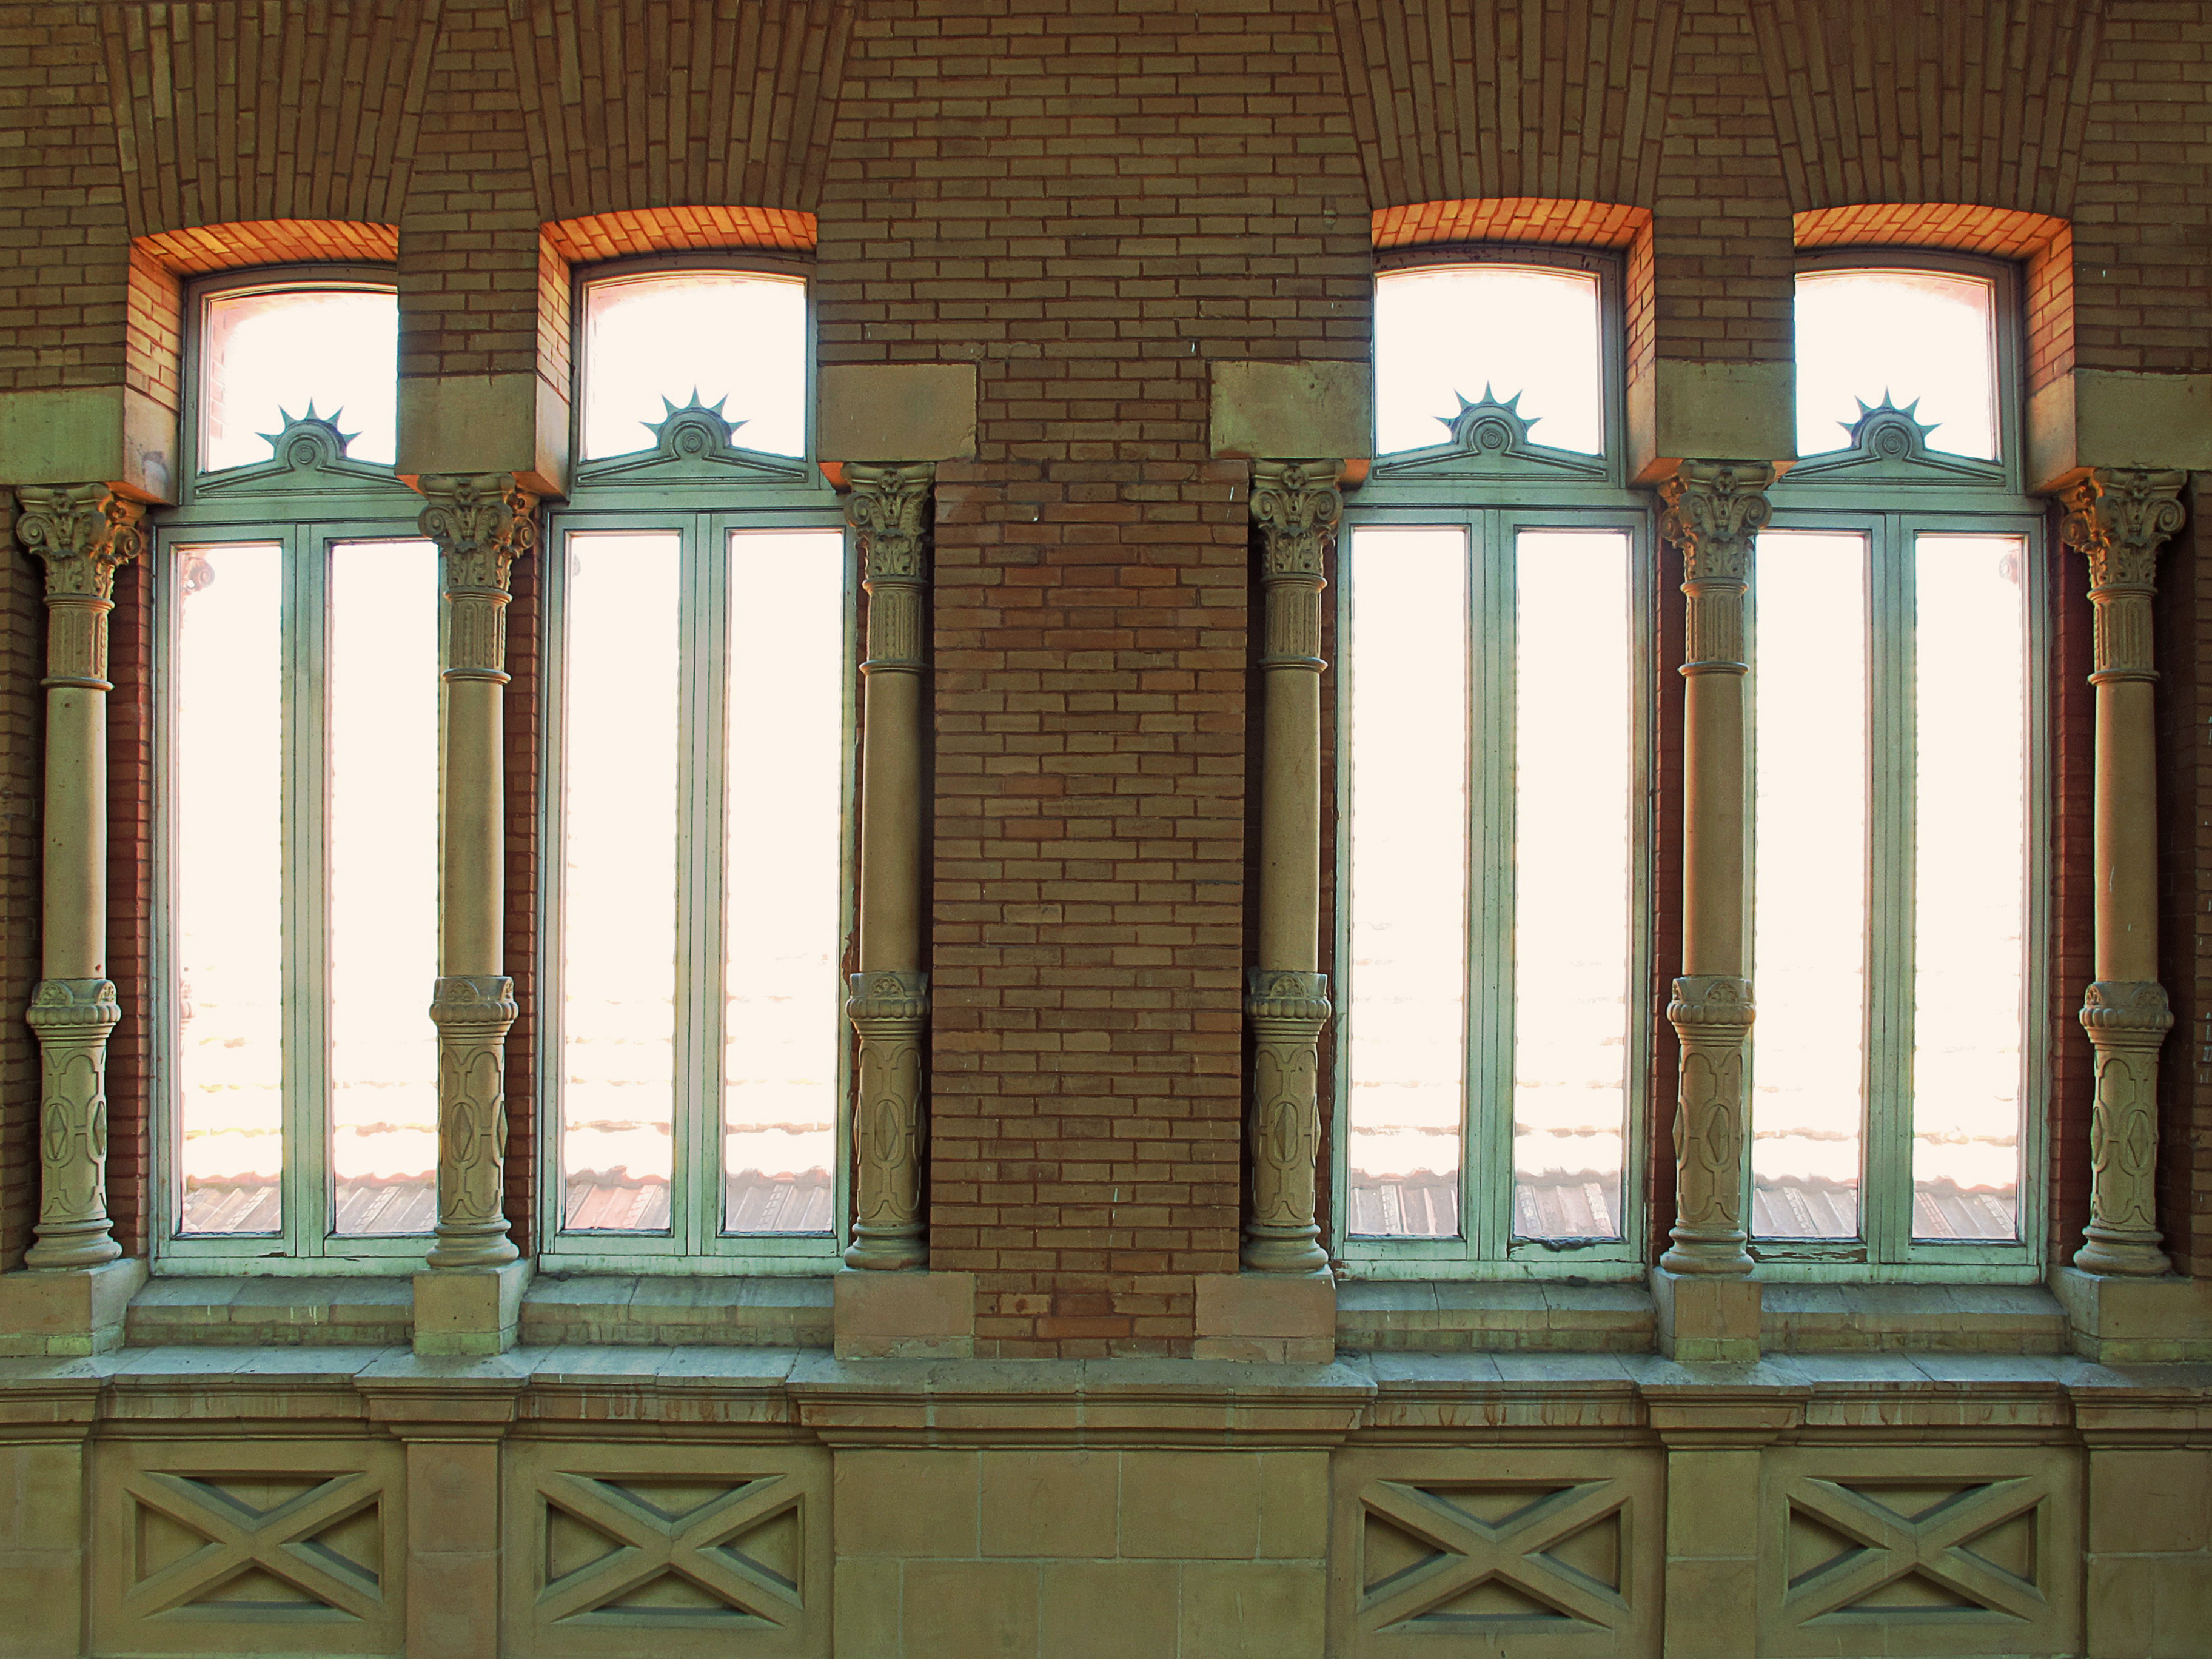 Polémico Respiración Reflexión File:Unas ventanas elegantes en la Estacion de Atocha (Madrid).jpg -  Wikimedia Commons